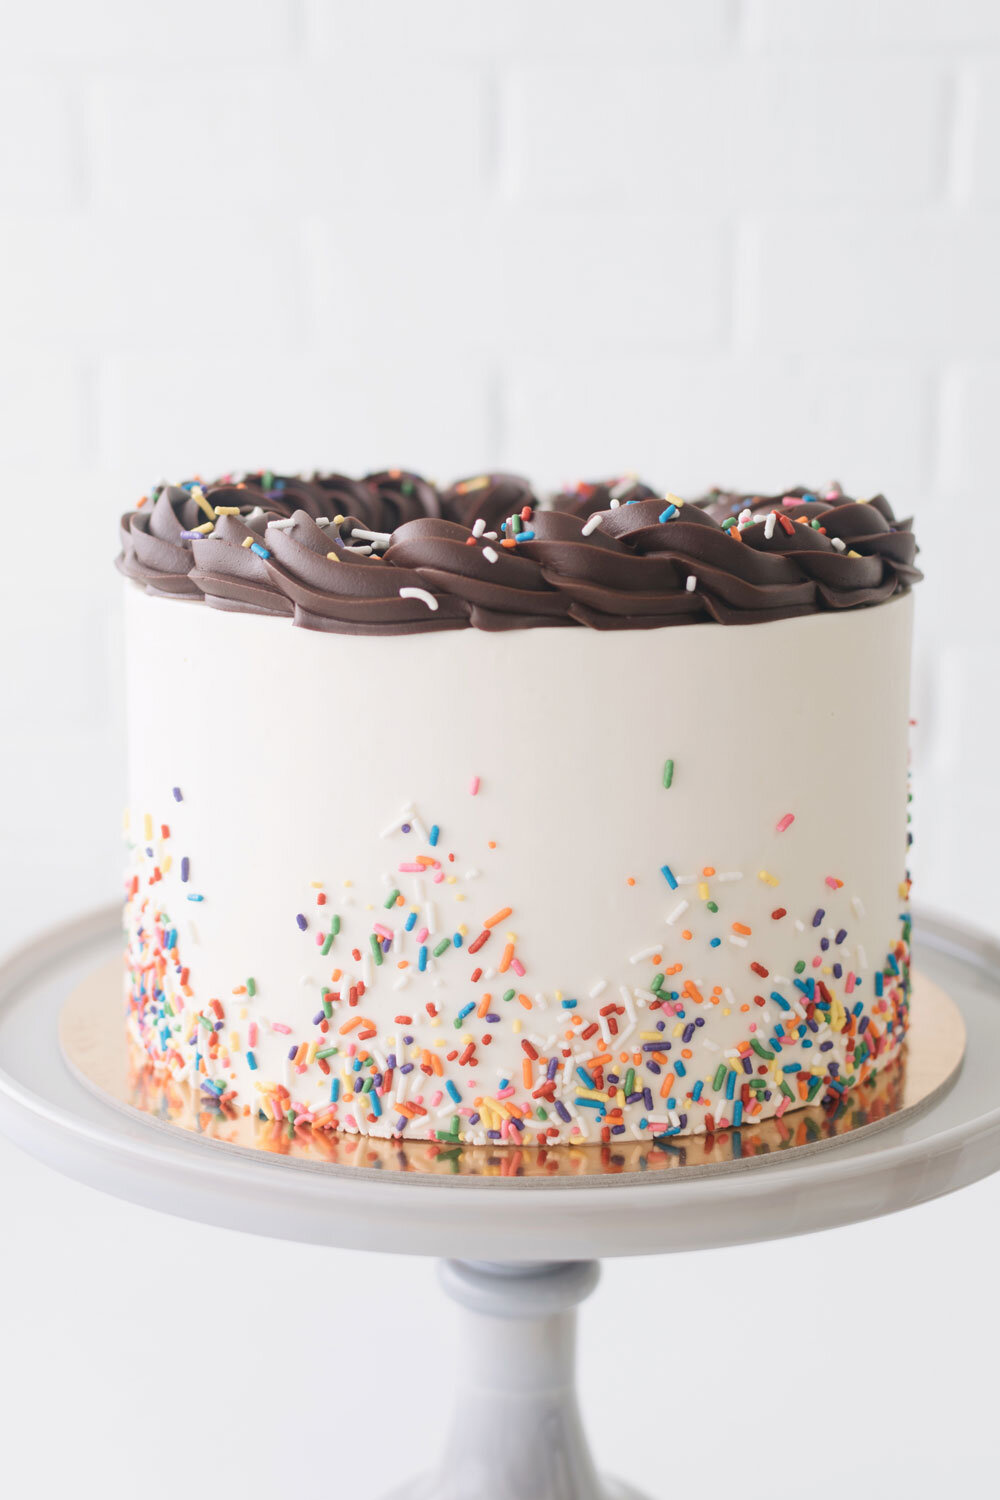 Designer Cake, Order Eggless Cake online